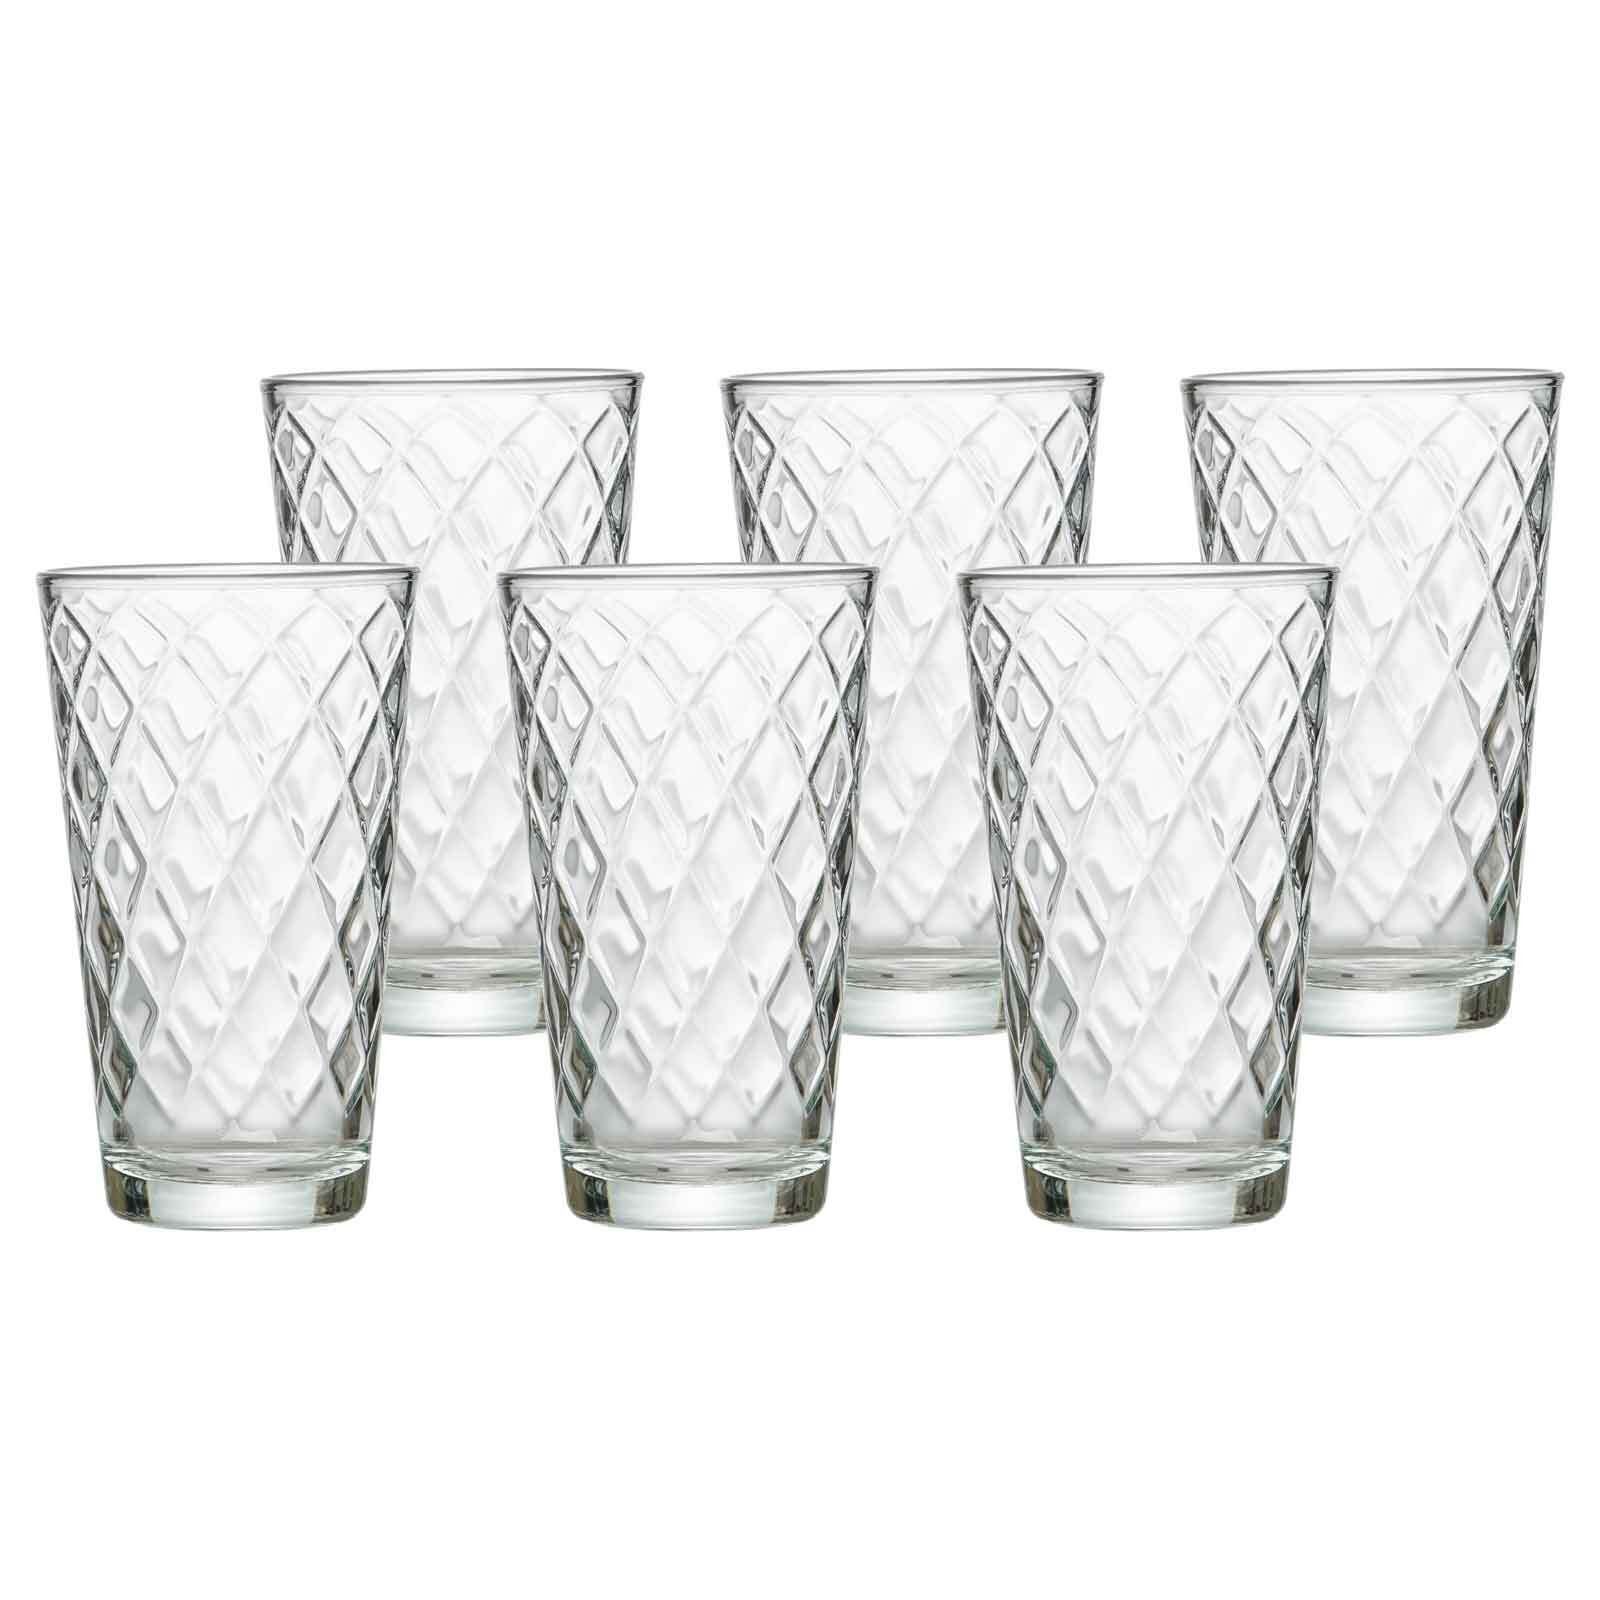 Ritzenhoff & Breker Longdrinkglas Wela Trinkgläser 400 ml 6er Set, Glas